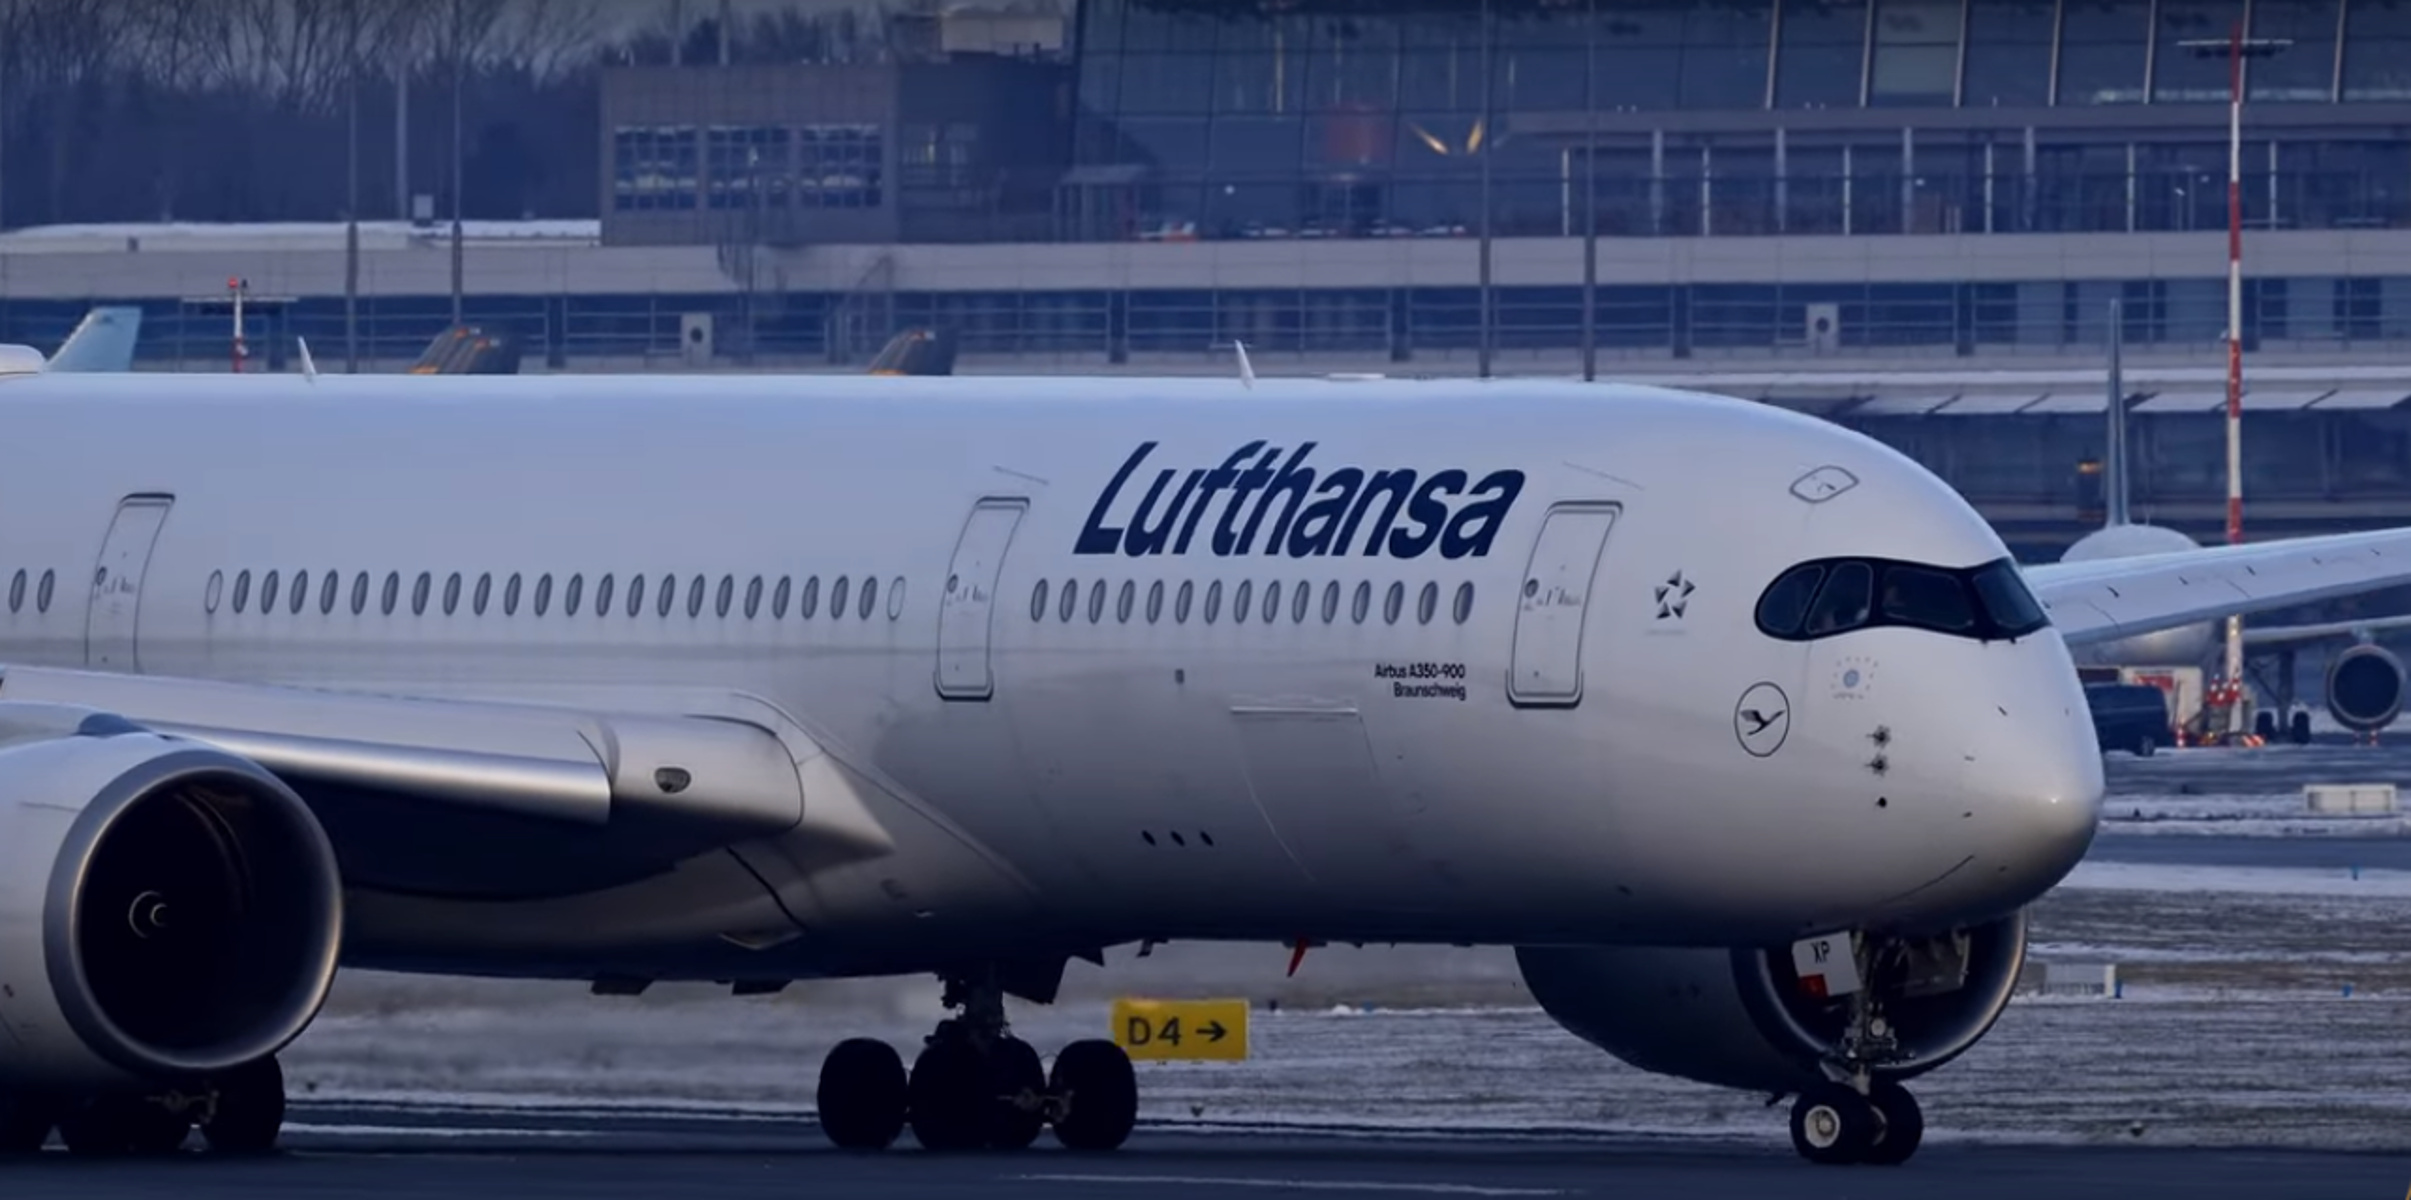 Η Lufthansa πραγματοποίησε τη μεγαλύτερη πτήση στην ιστορία της χωρίς στάση